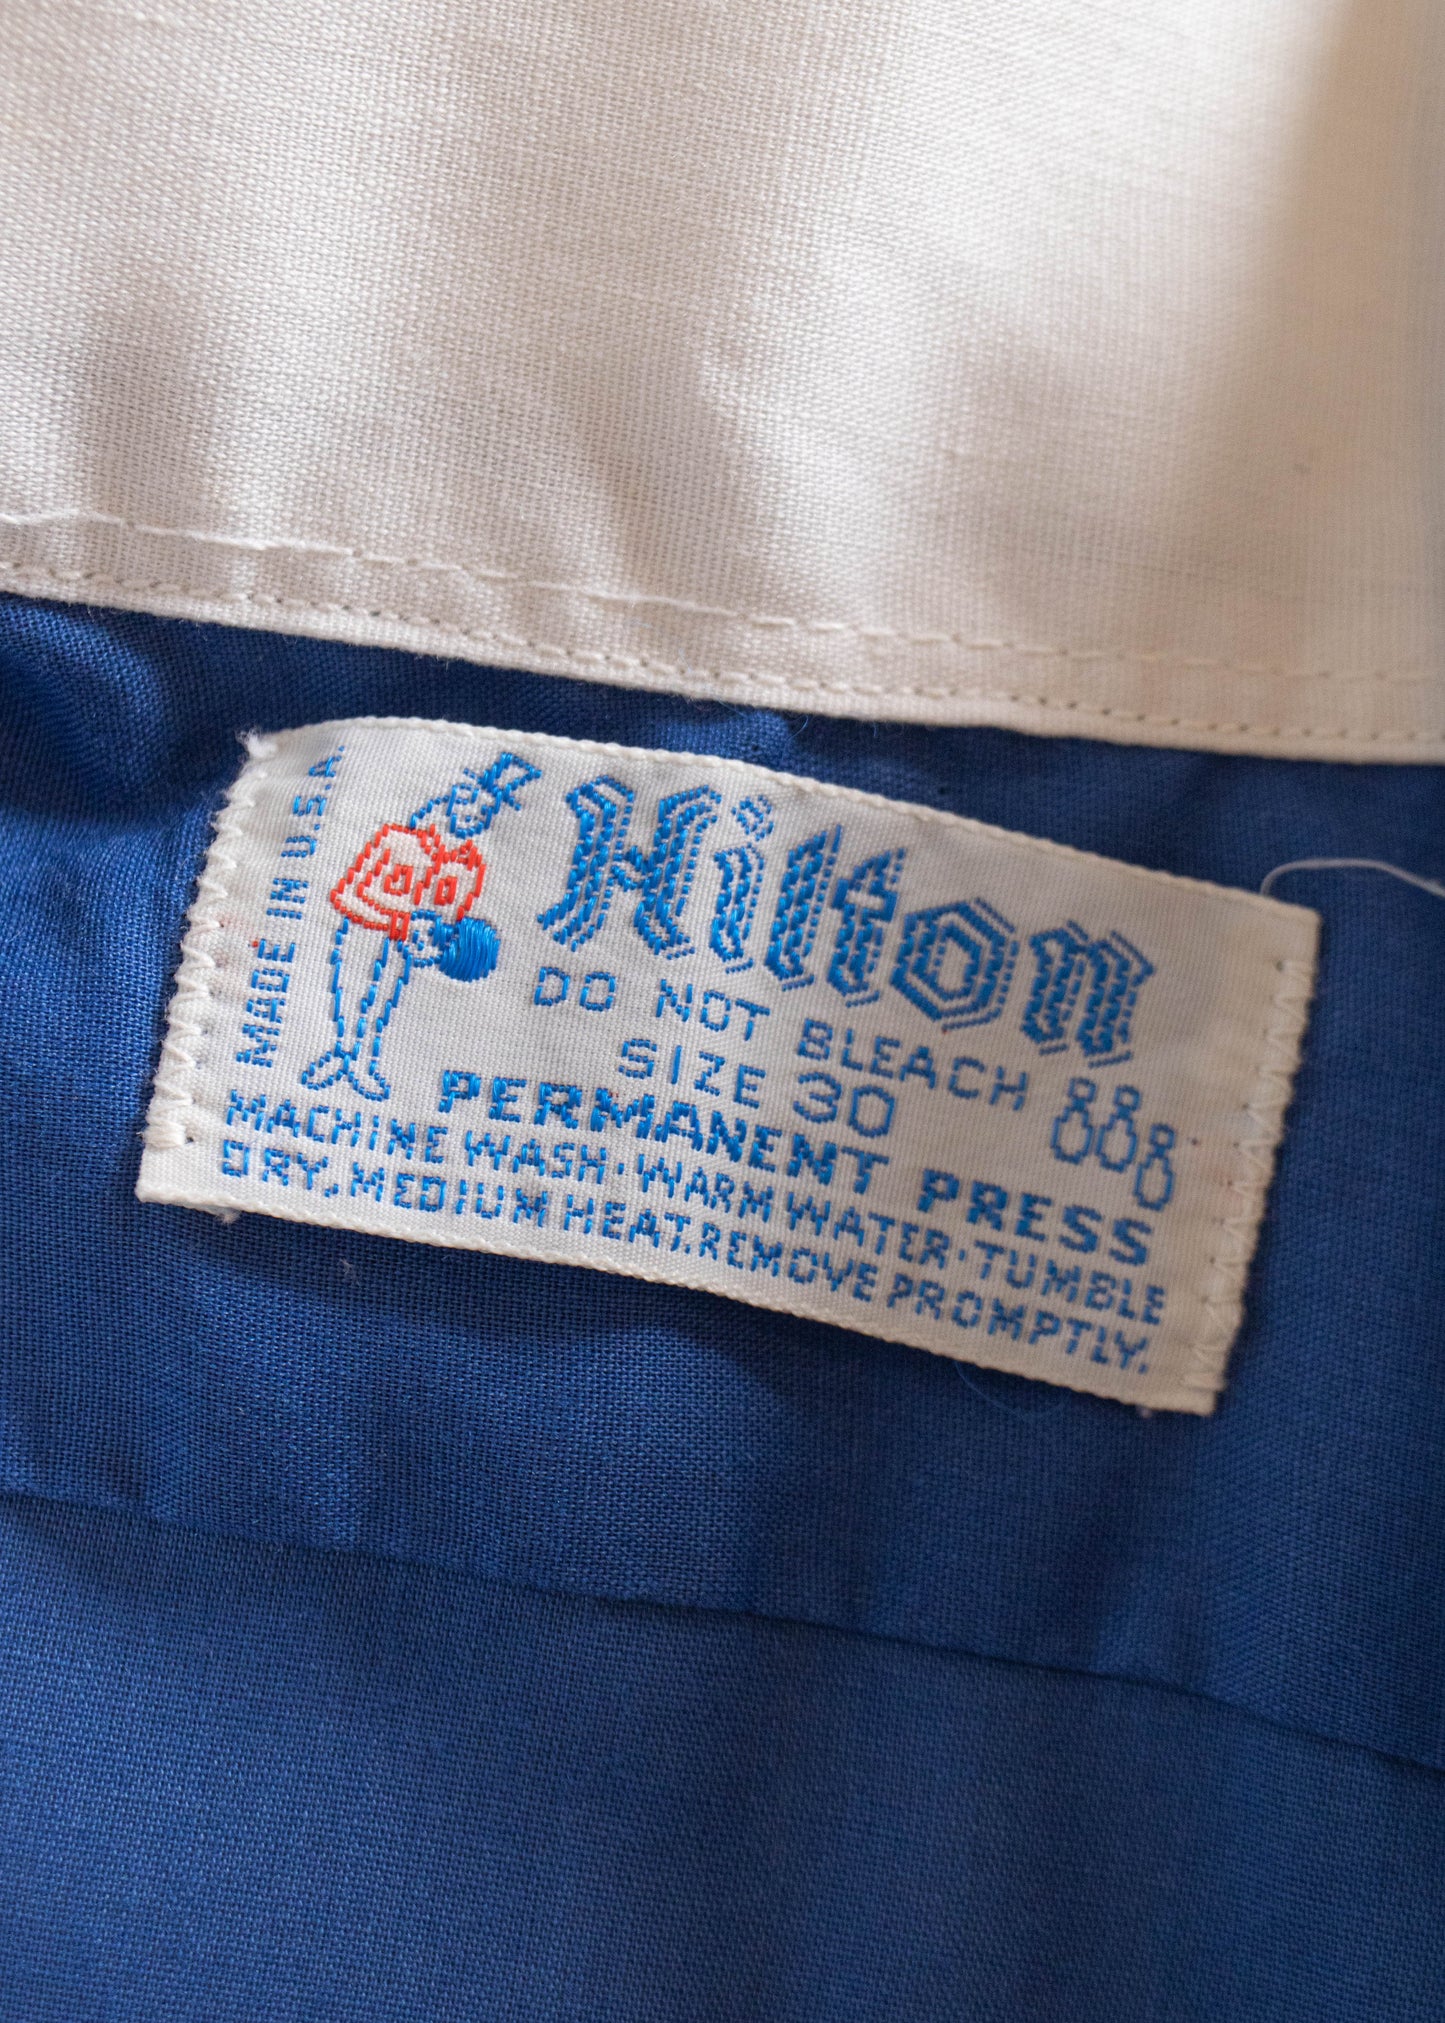 1960s Hilton Chainstitched Bowling Shirt Size 2XS/XS